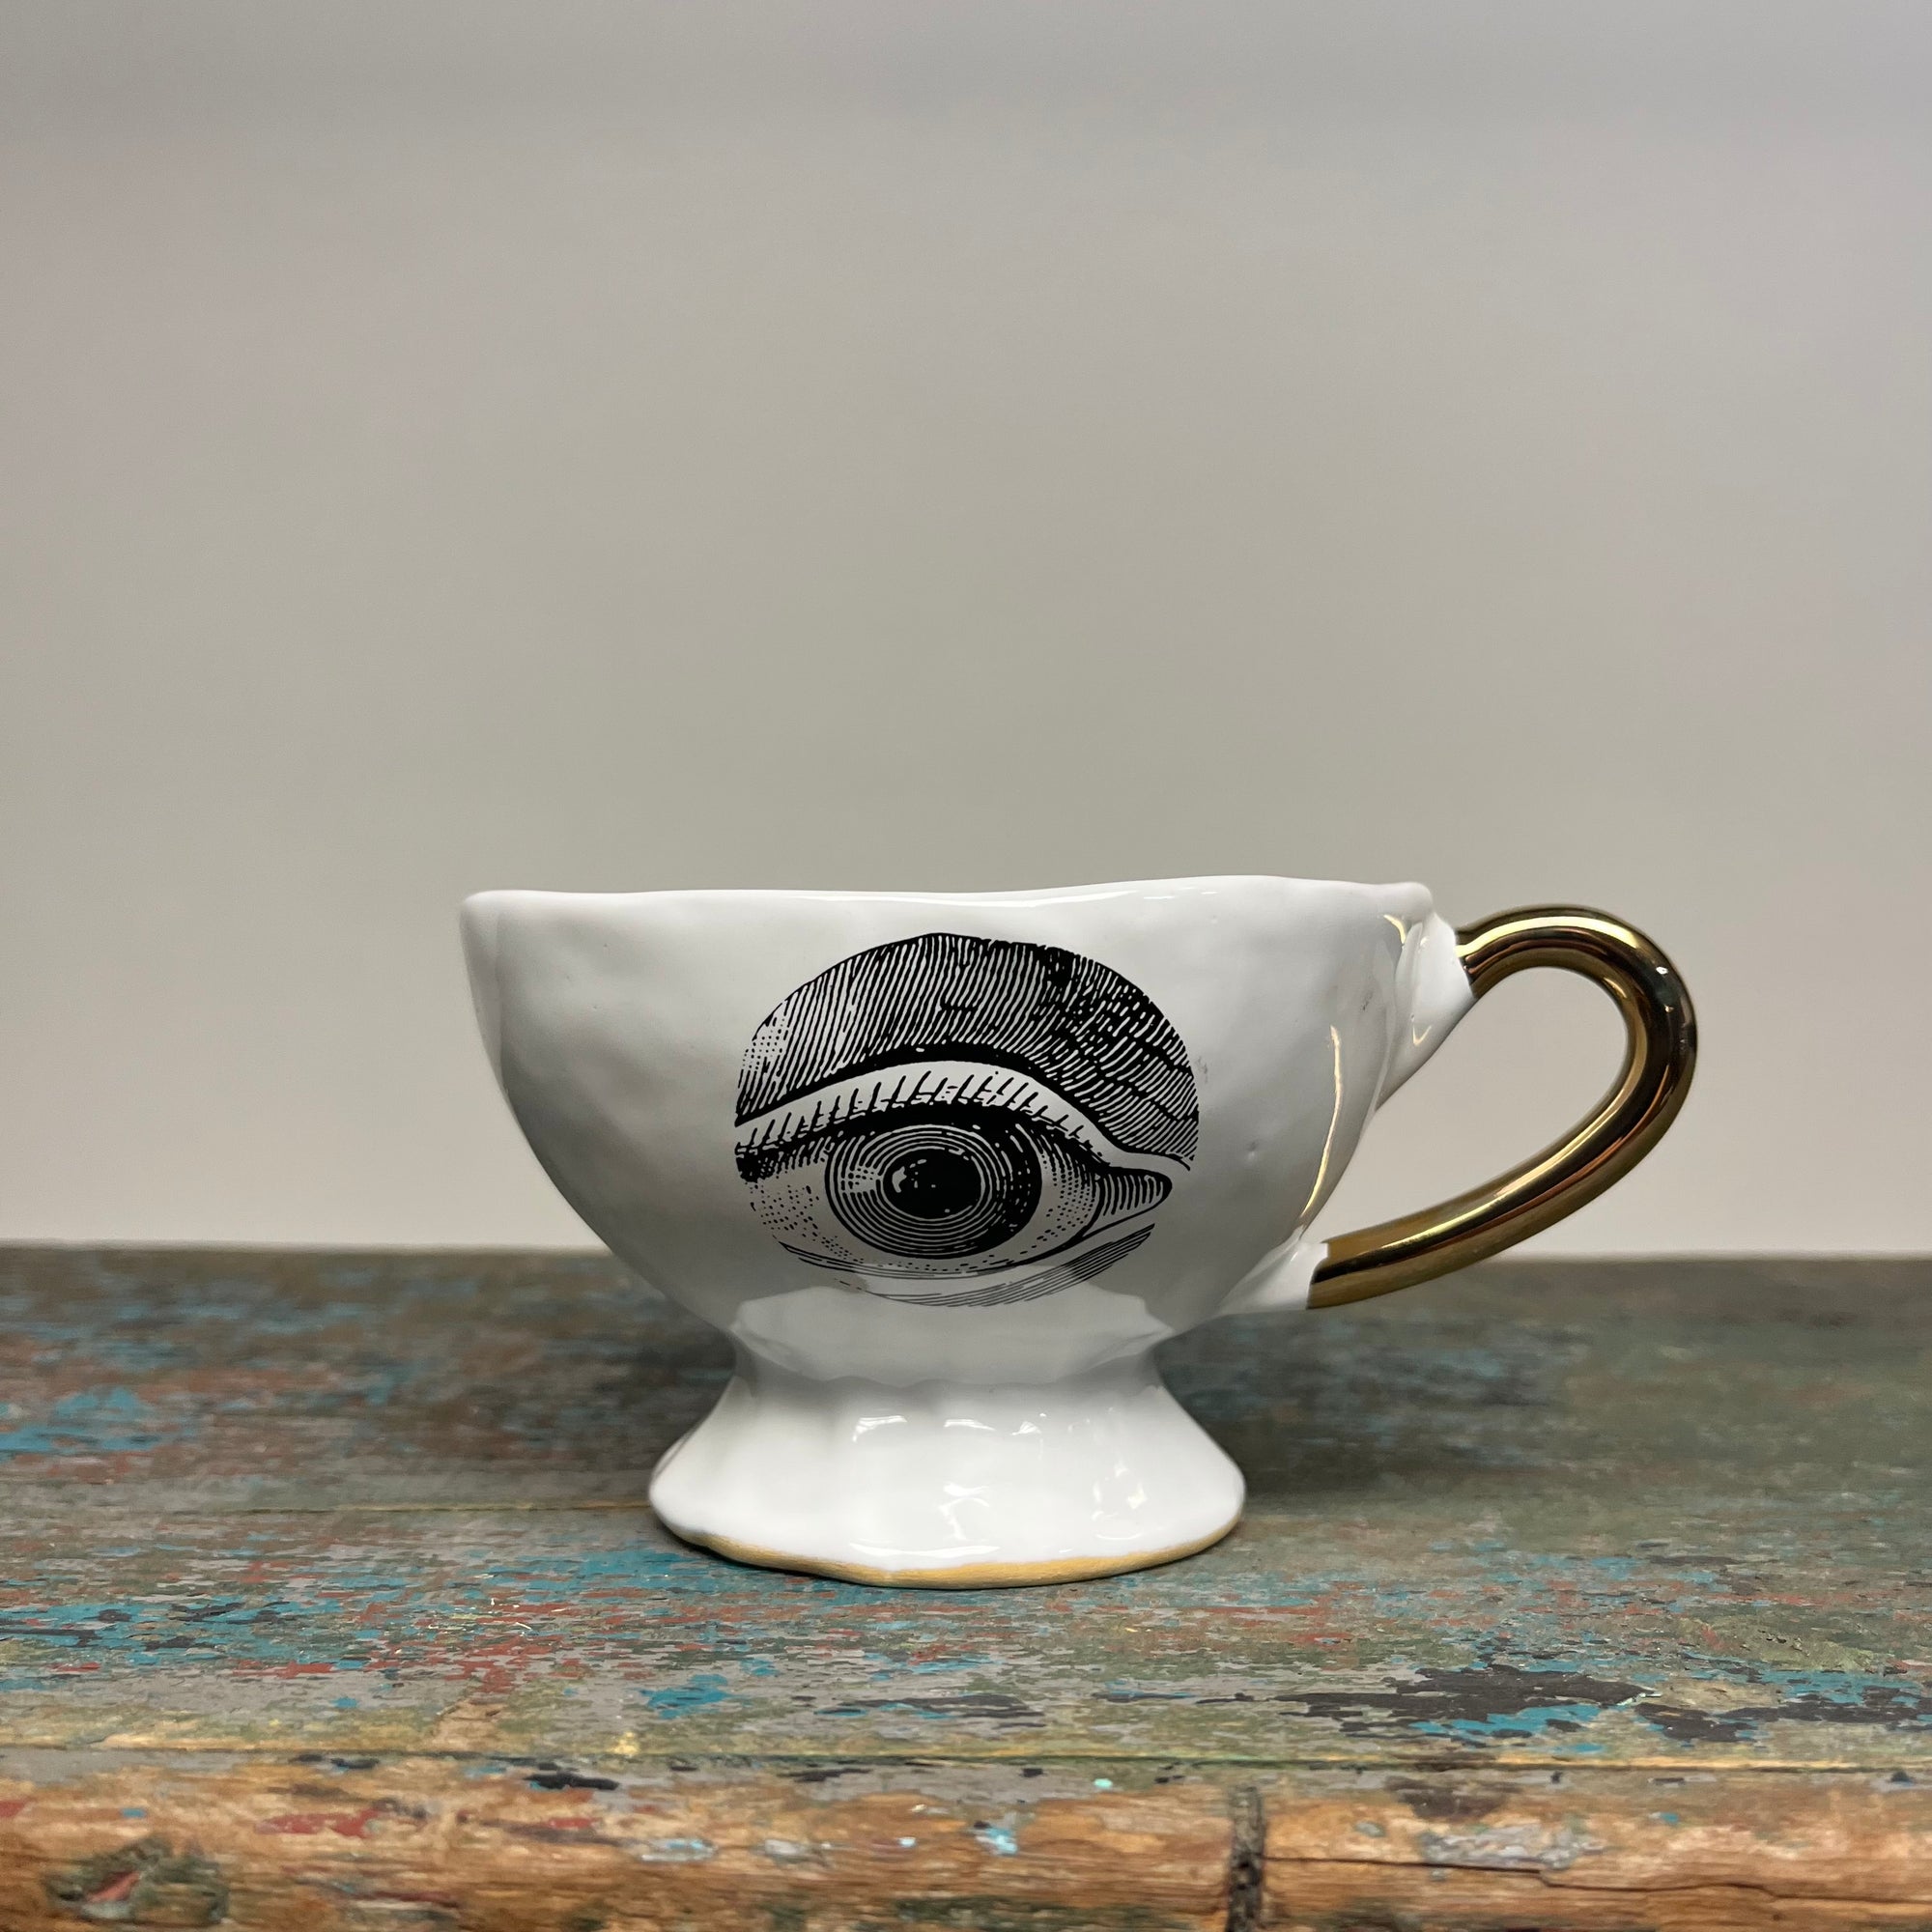 Kuhn Keramik Eye 'Glam' Office Coffee Cup